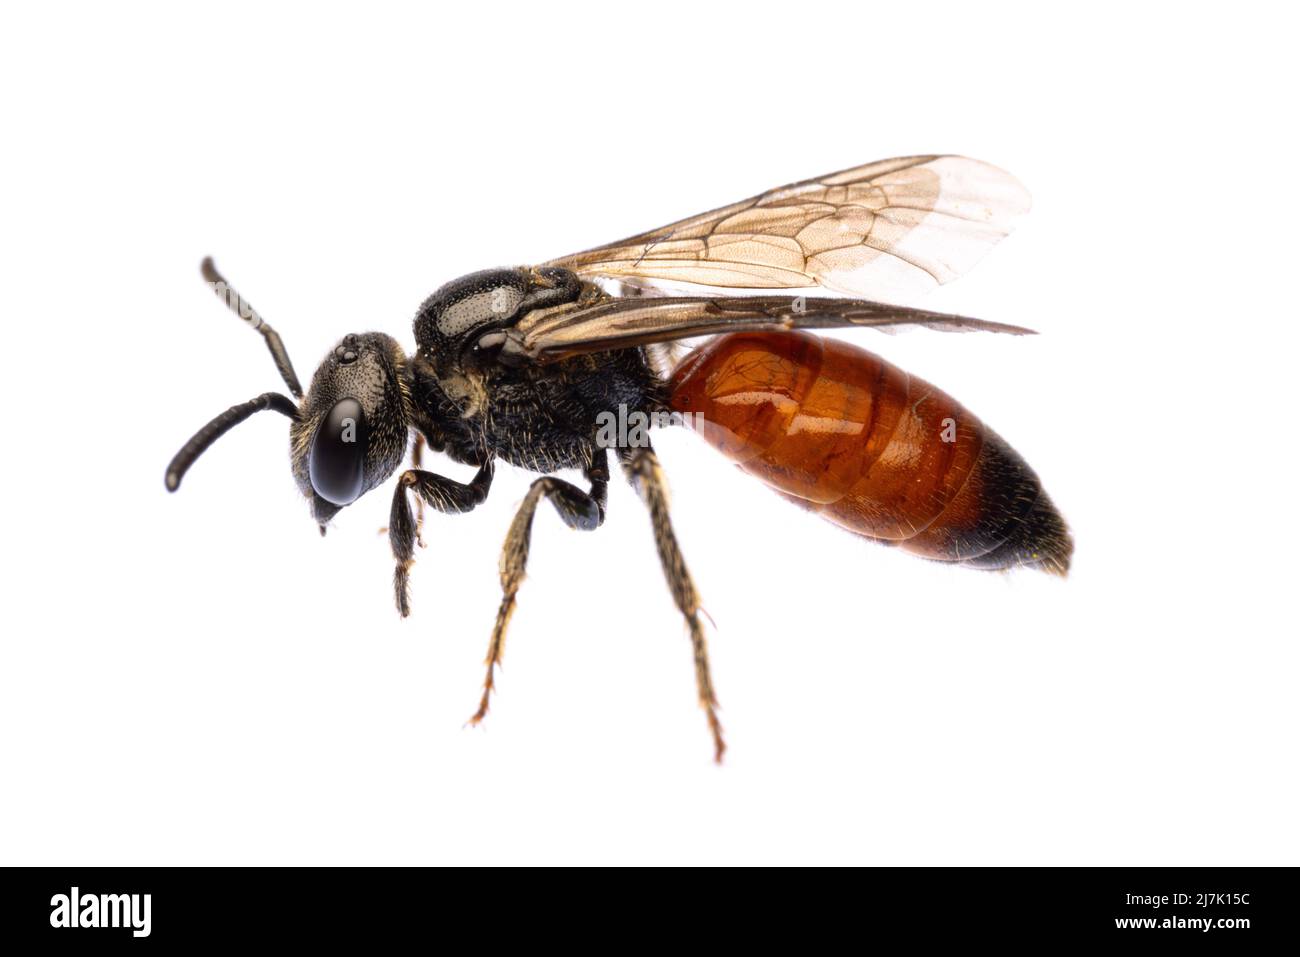 Insectos de europa - abejas: Vista lateral de la sangre de abejas Especodos (blutbiene alemán) aislados sobre un fondo blanco con Foto de stock